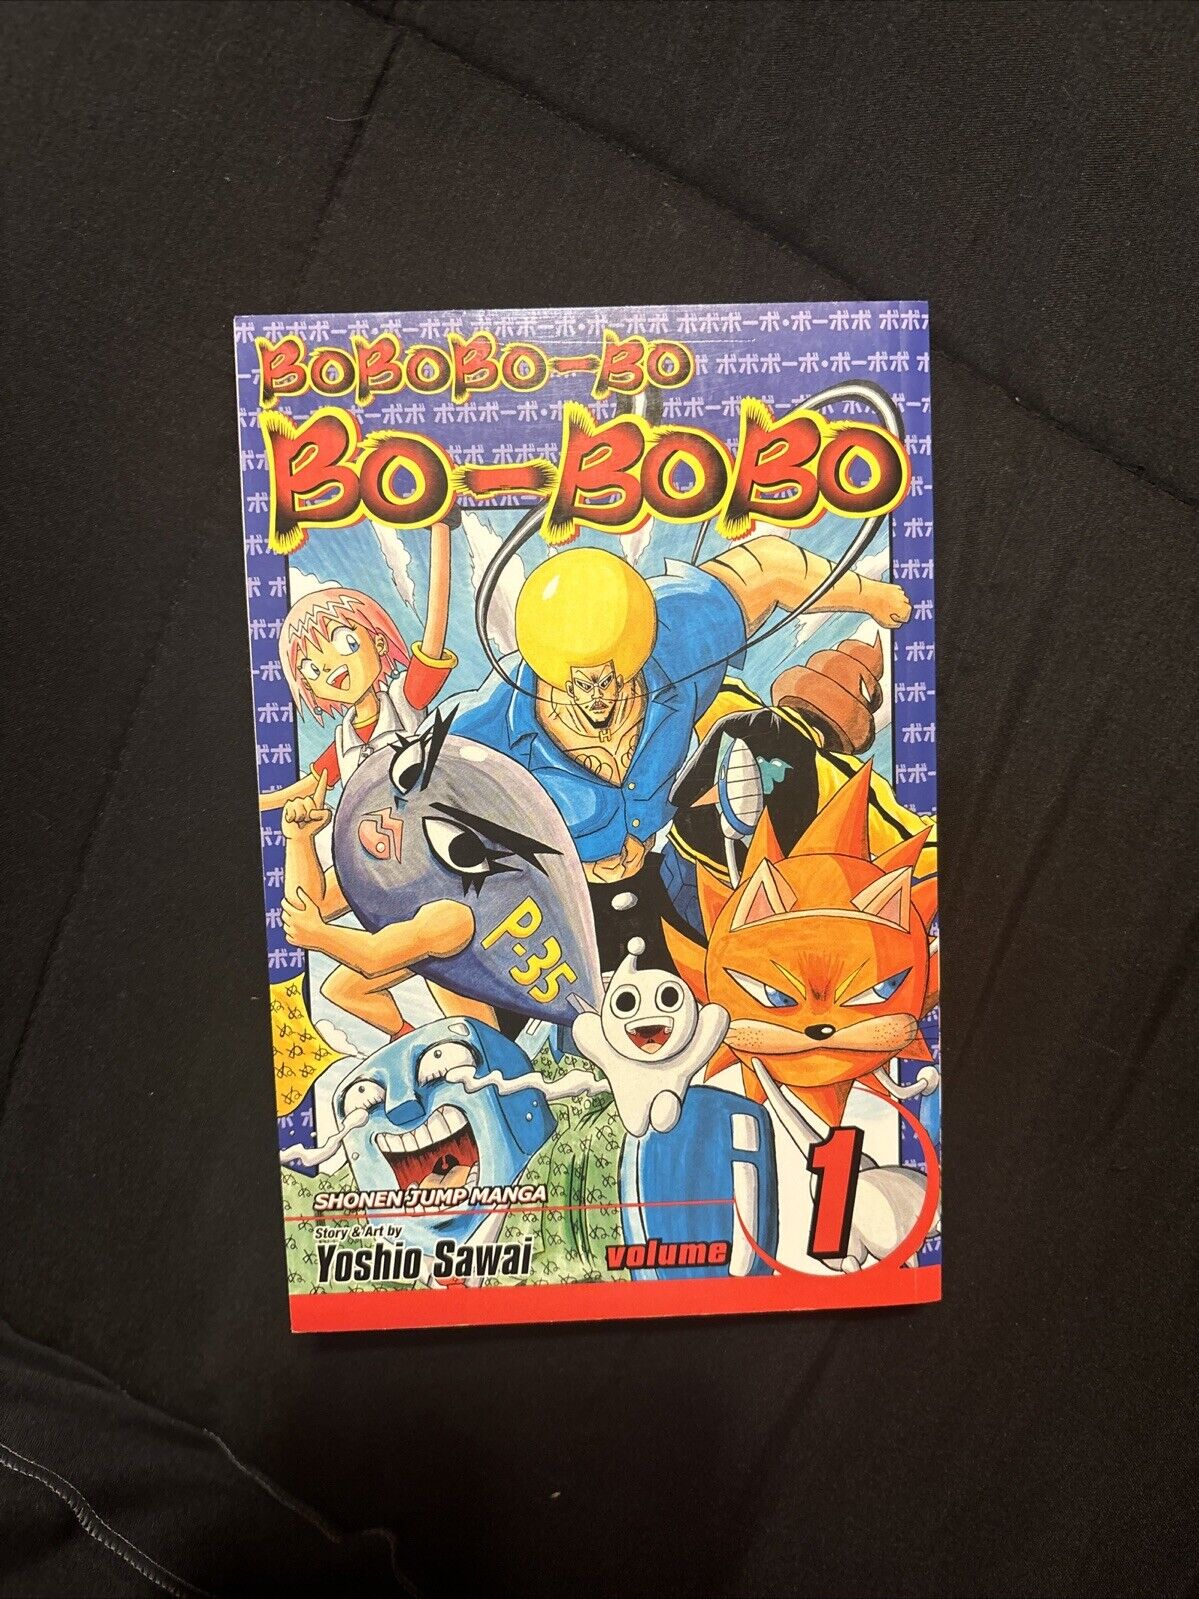 BoBoBo-Bo Bo-BoBo Volume 1 Manga Yoshio Sawai Shonen Jump English 1st Printing